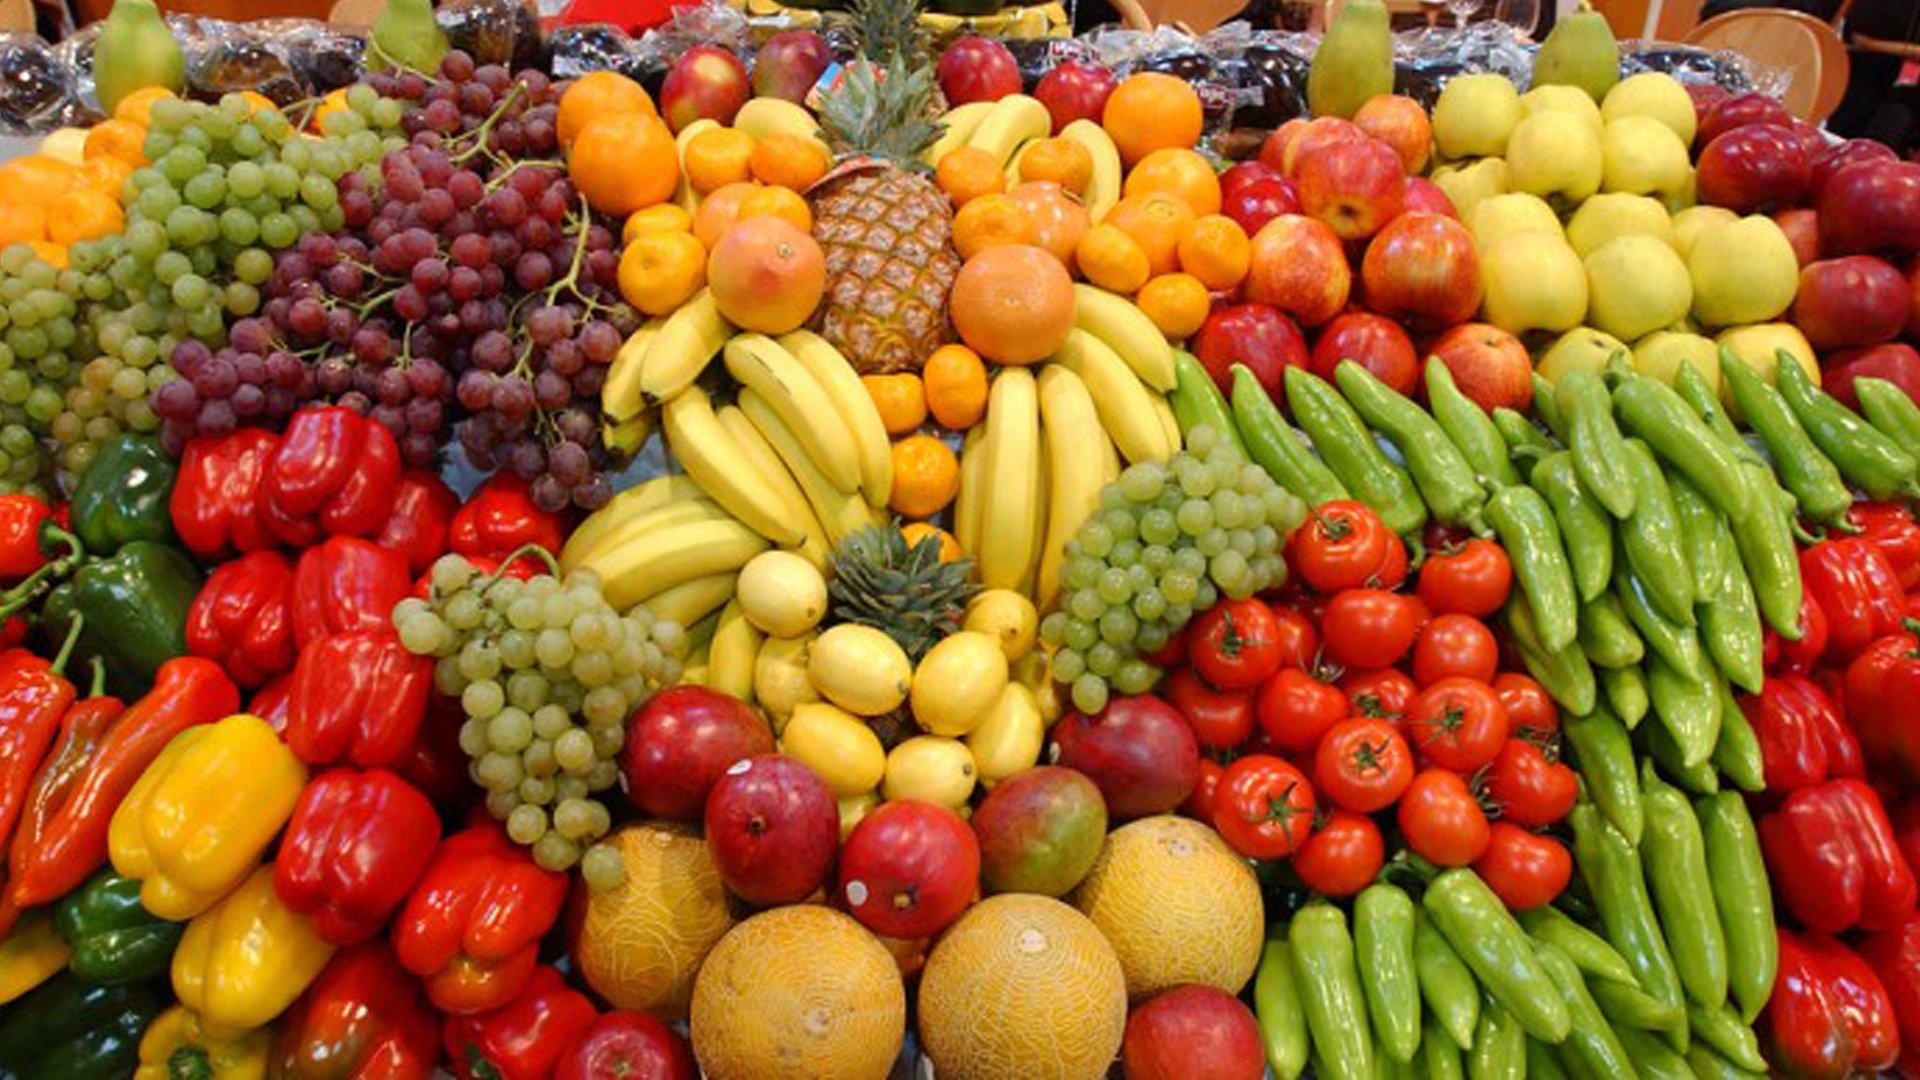 И фрукты там где. Овощи и фрукты. Свежие овощи и фрукты. JDJIB B aheernb. Азербайджанские фрукты и овощи.